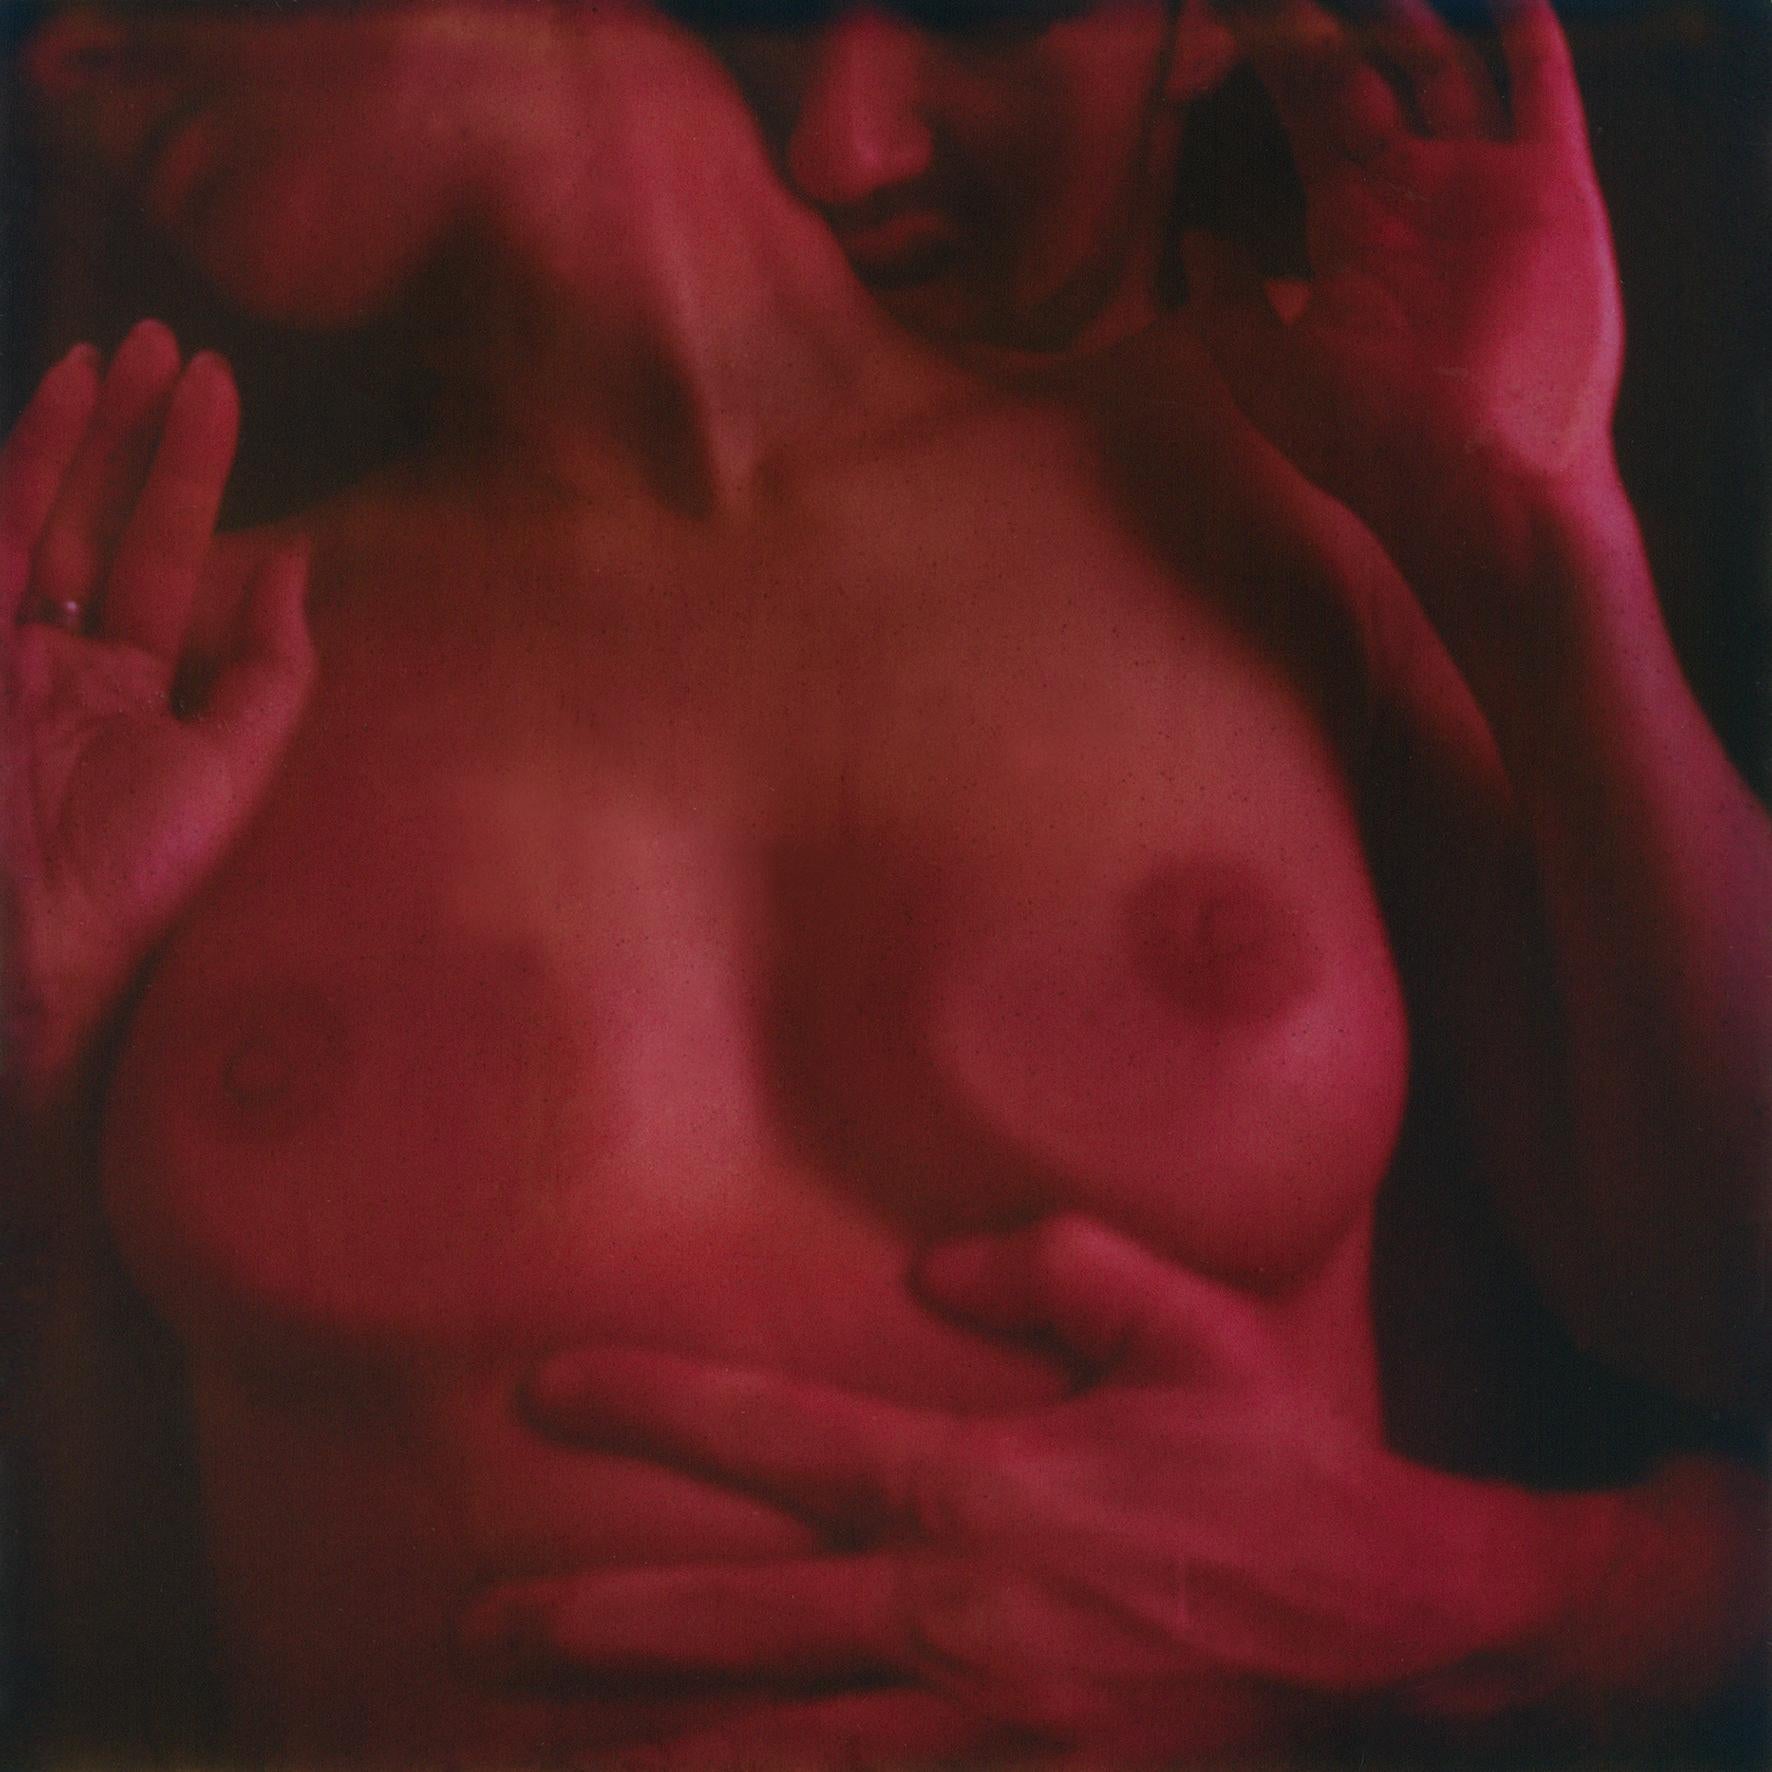 Gehäuse 47 #08, 2006 [Aus der Serie Le Fan dO] - Polaroid, Nackt, Frauen, Farbe